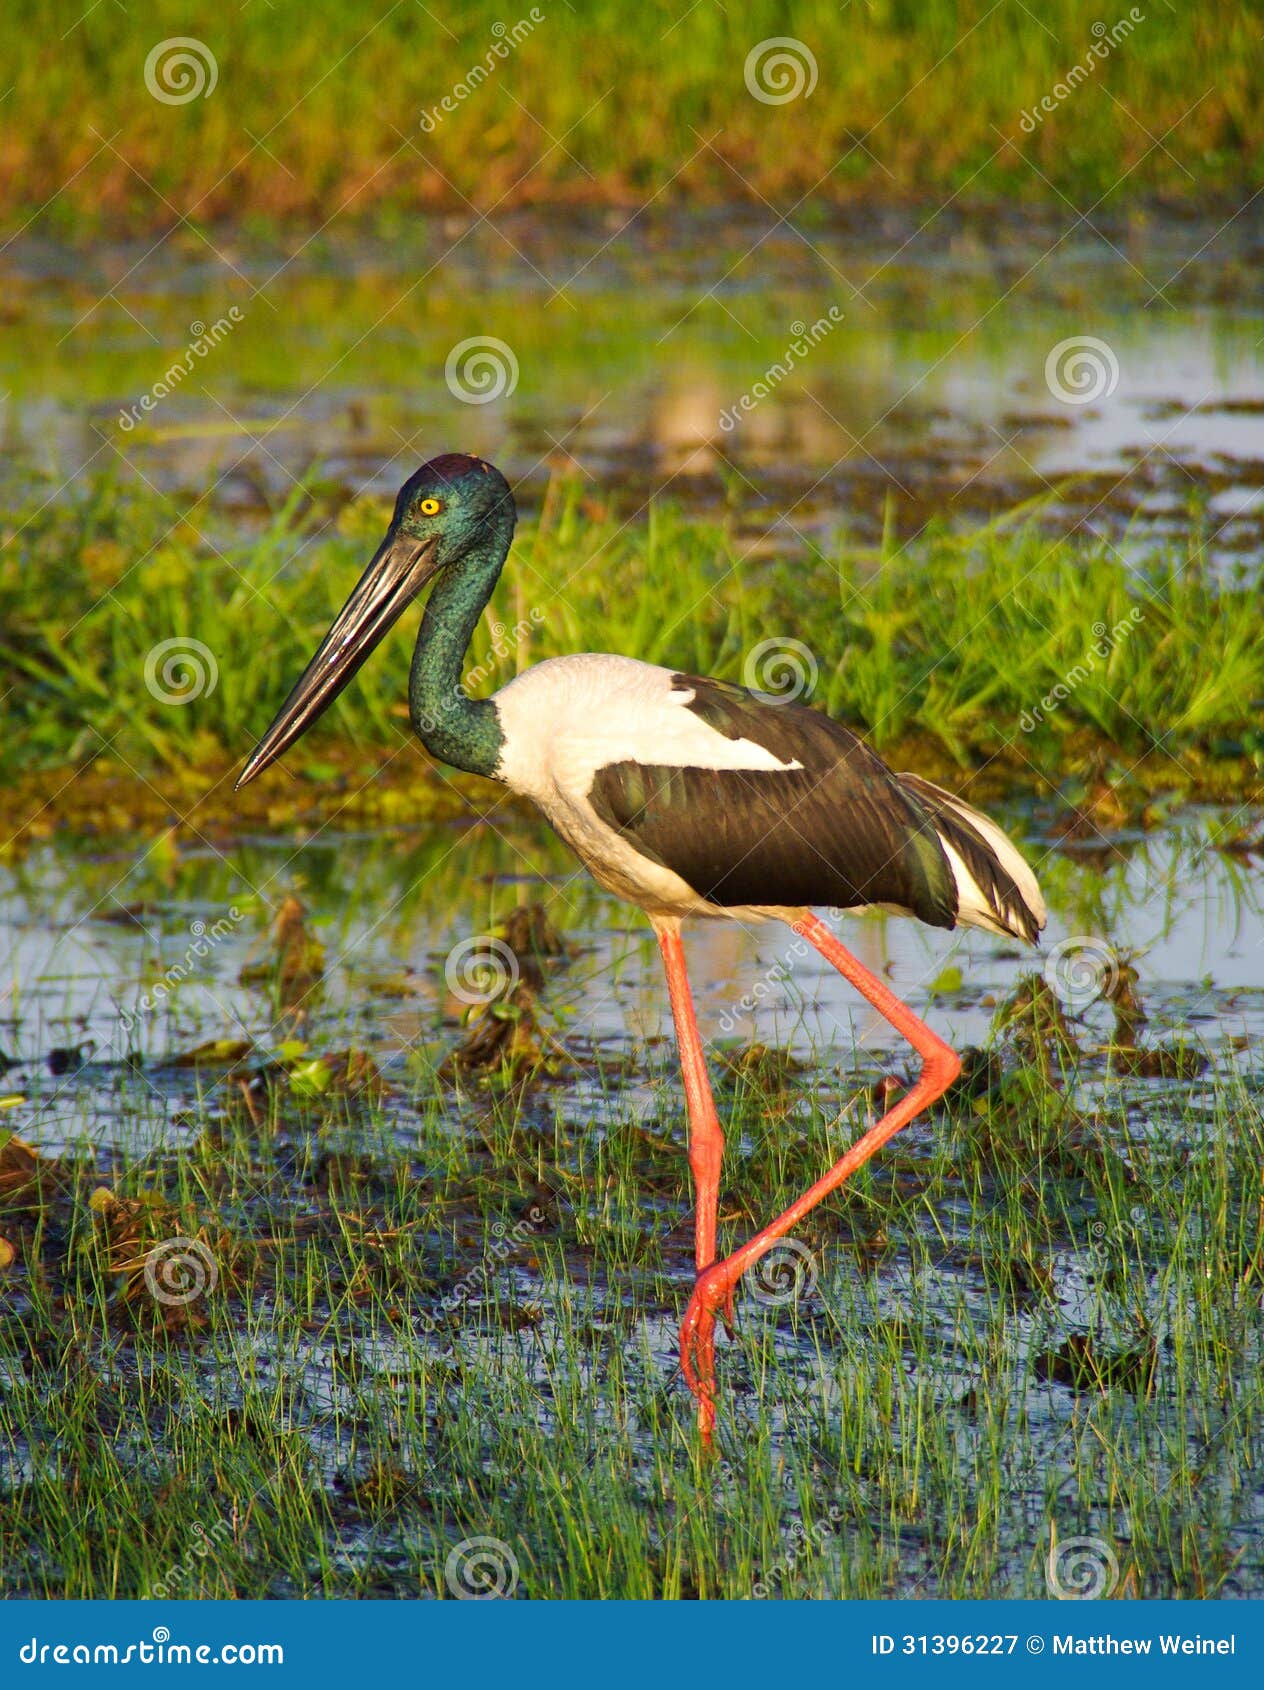 jabiru wading in wetlands